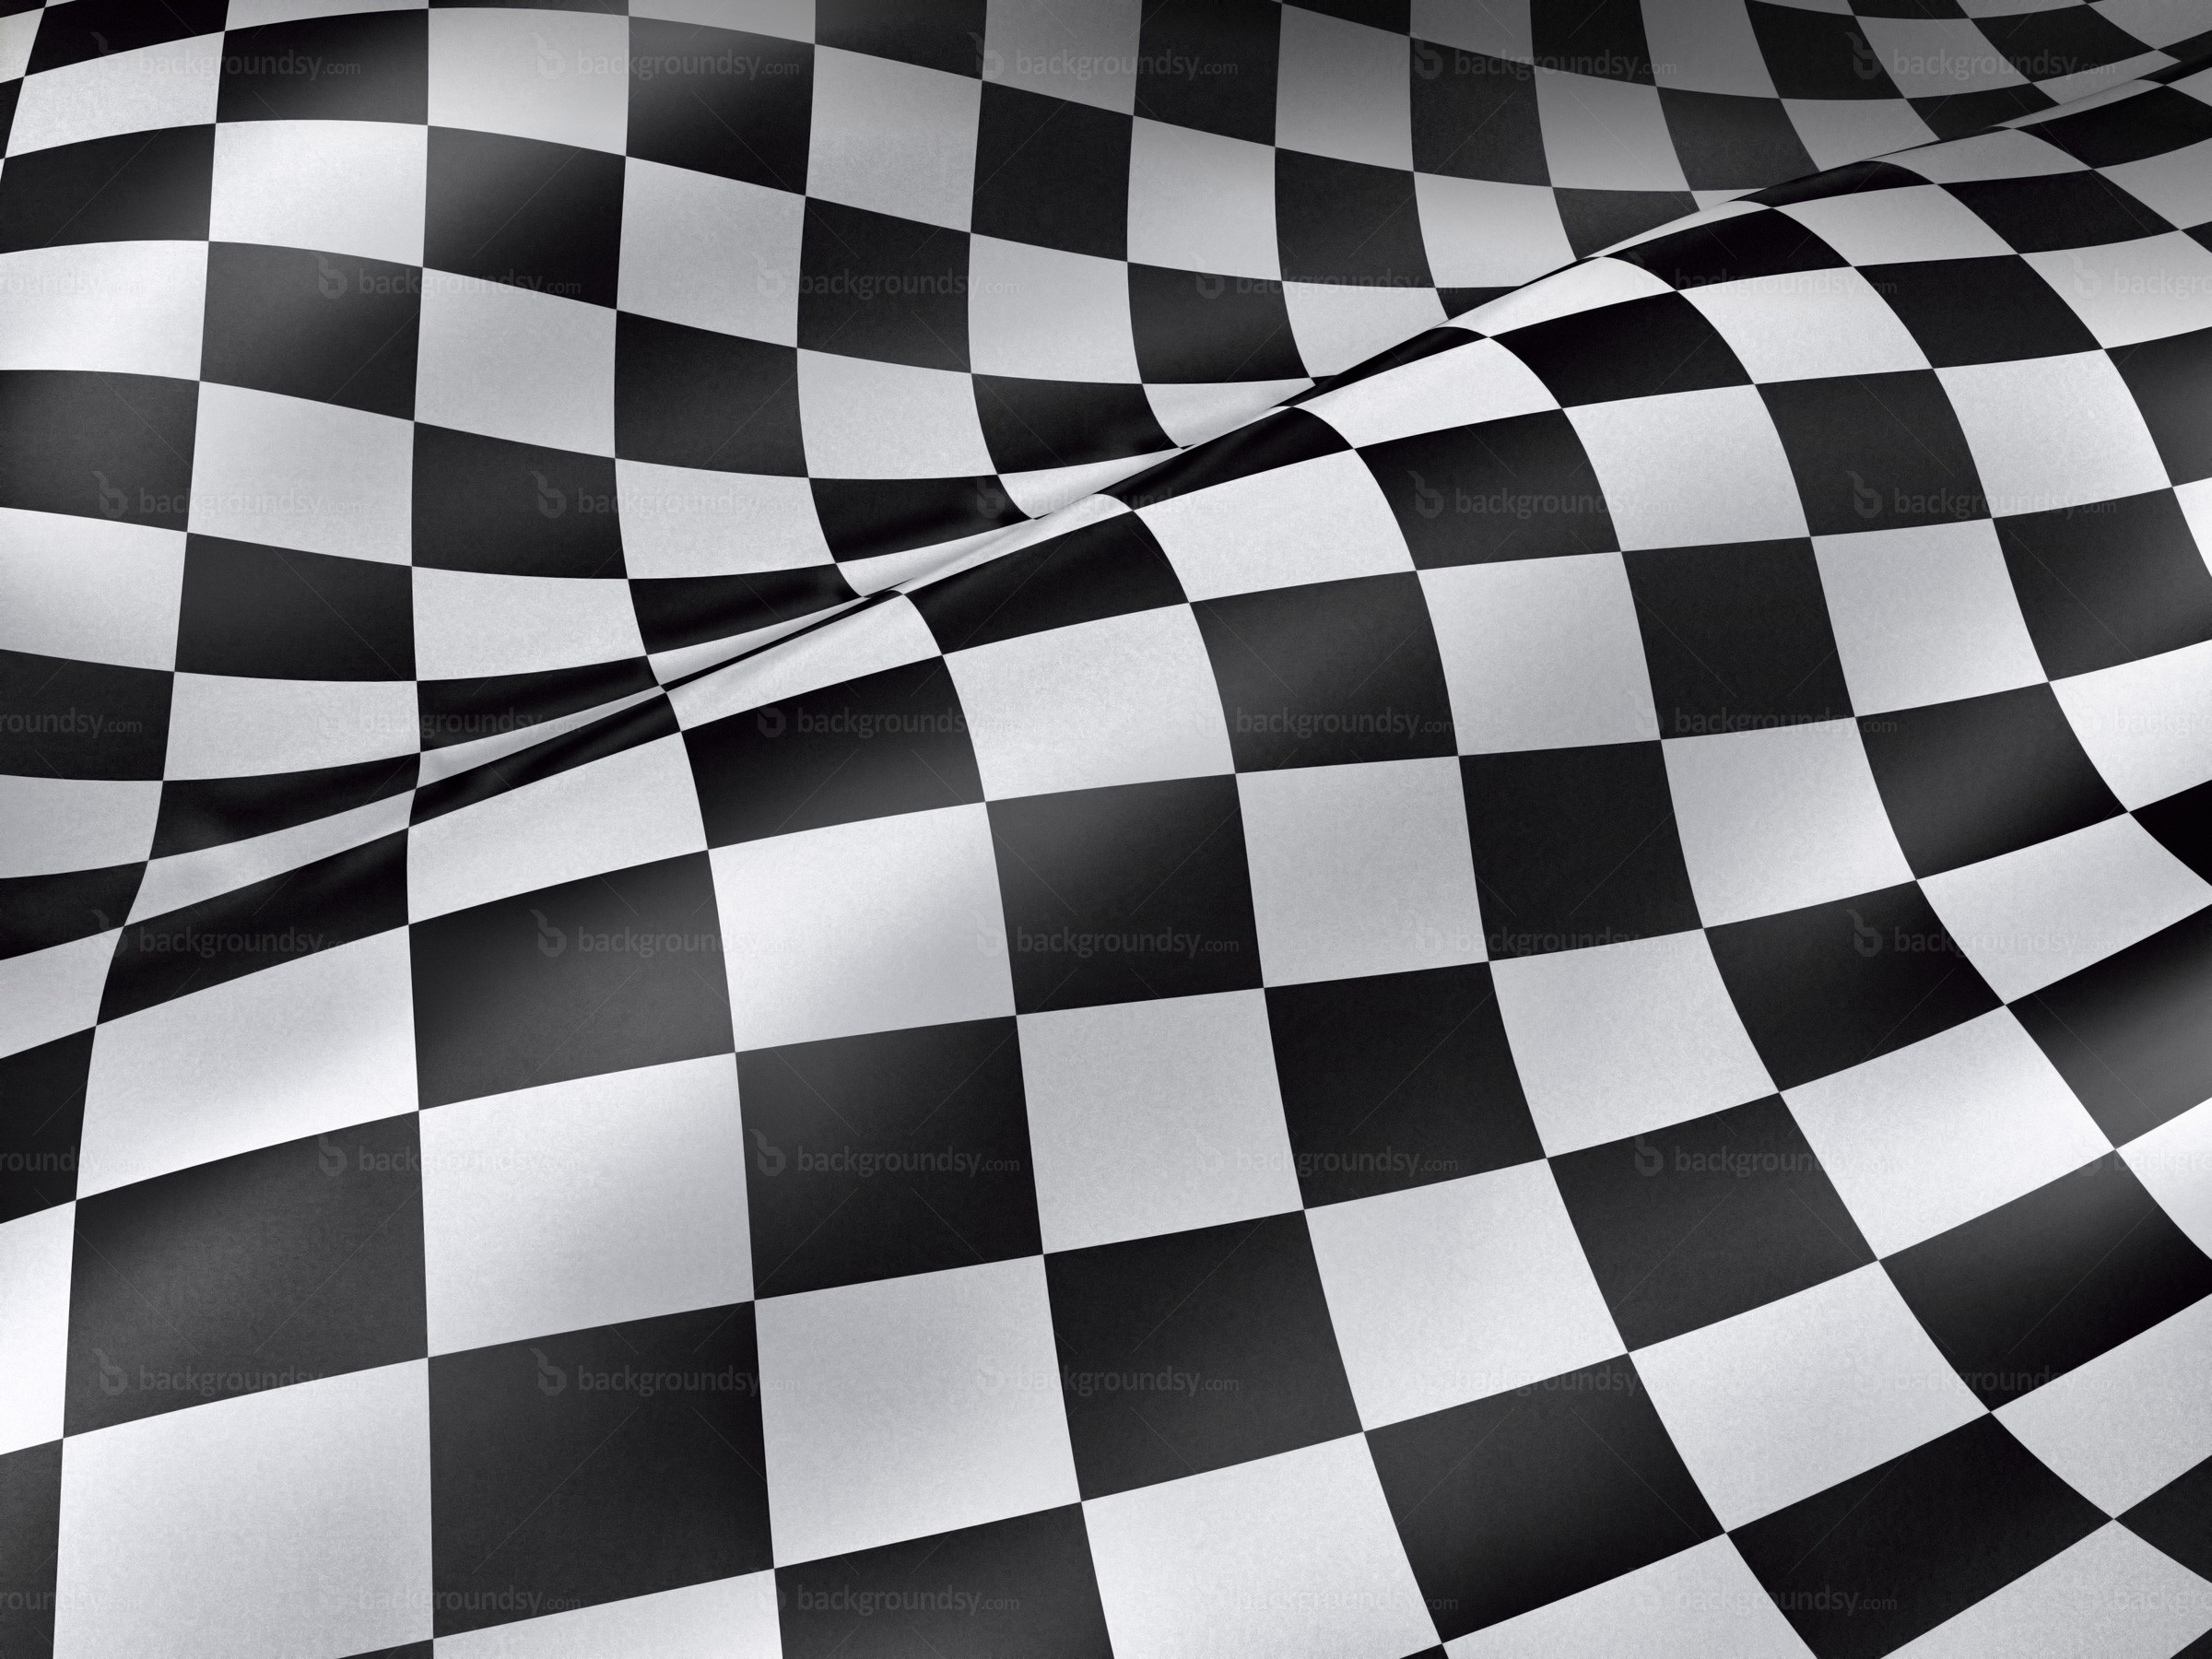 2400x1800 Checkered Flag 